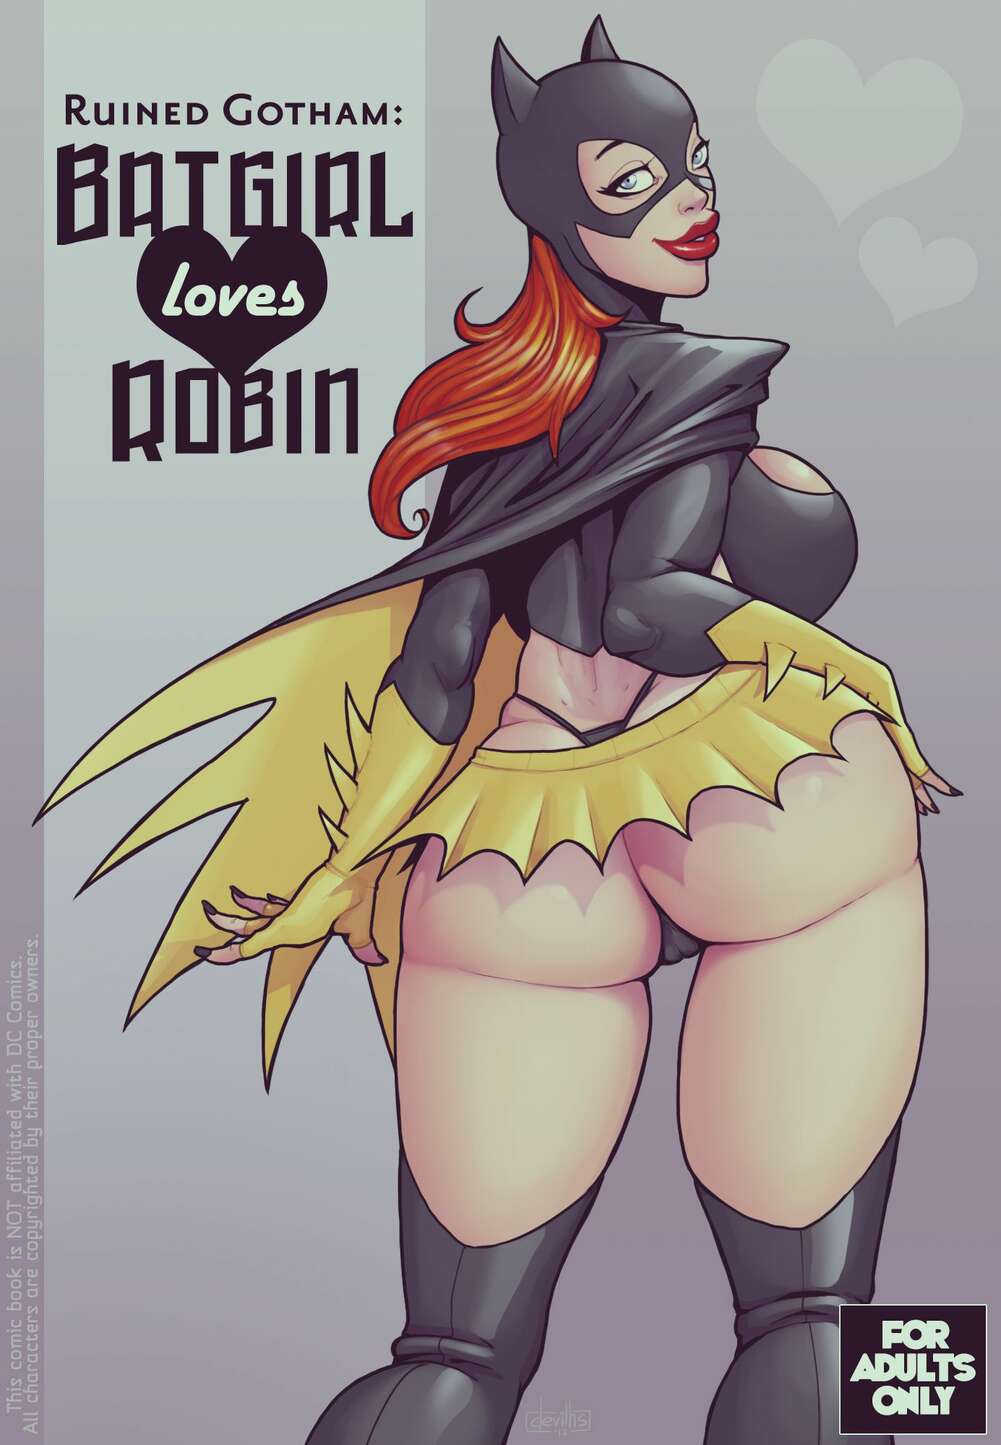 1001px x 1445px - â„¹ï¸ Porn comics Ruined Gotham. Batgirl Loves Robin. Batman. Erotic comic  needed to go â„¹ï¸ | Porn comics hentai adult only | comicsporn.site